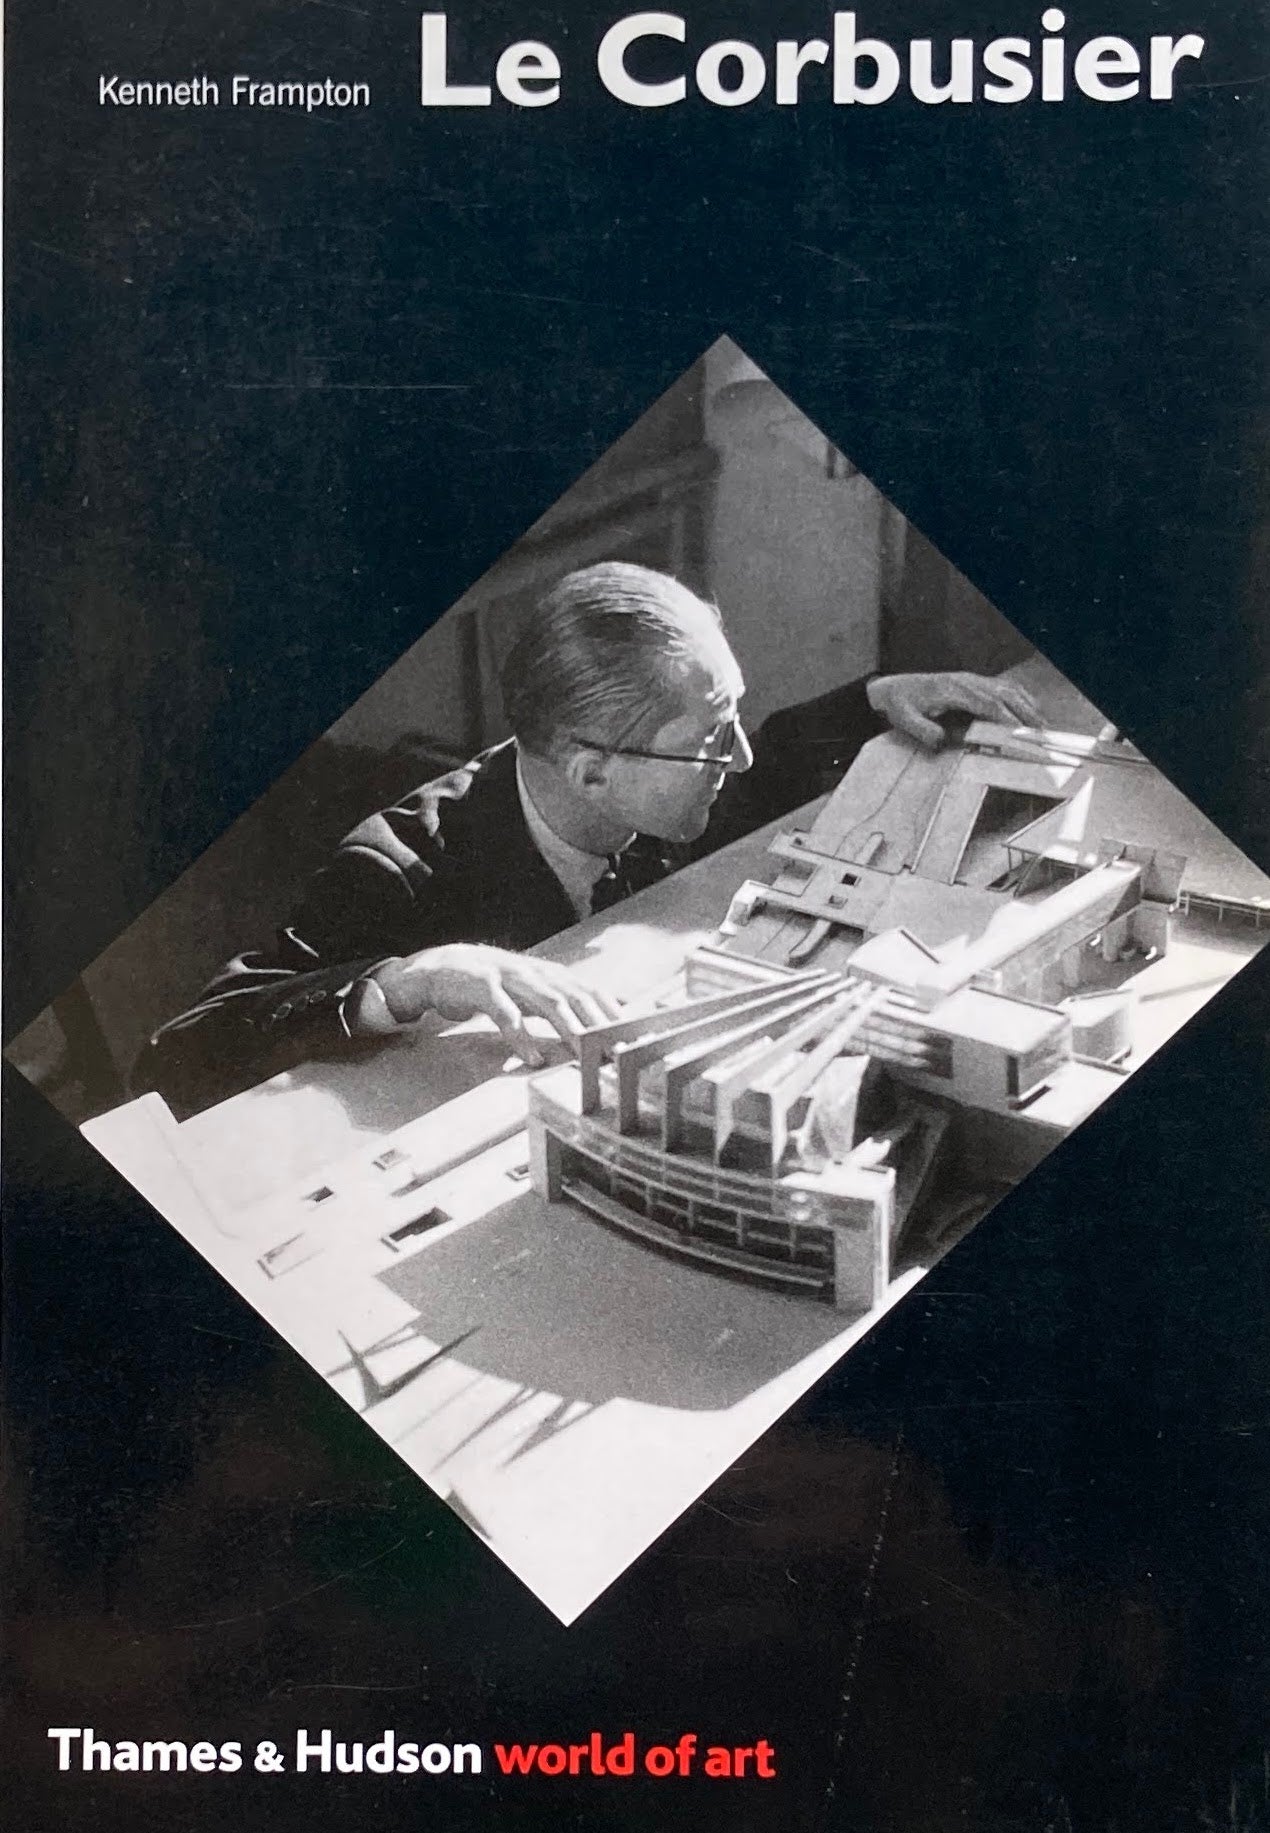 Le Corbusier　Kenneth Frampton　Thames＆Hudson world of art　ル・コルビュジエ